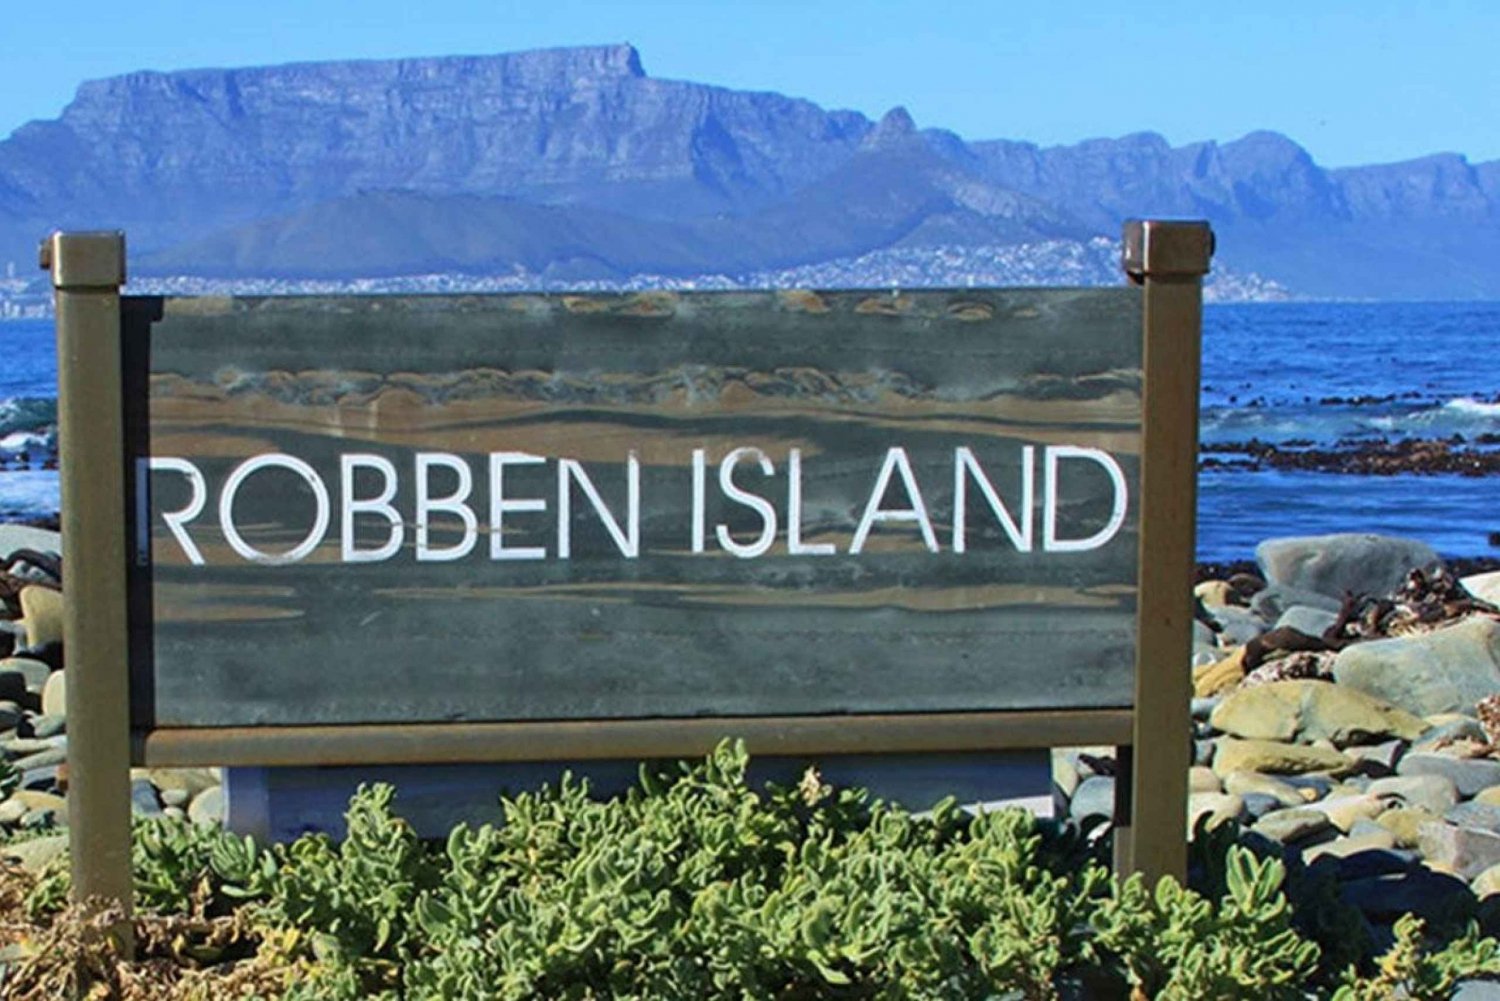 robben island museum tour tickets